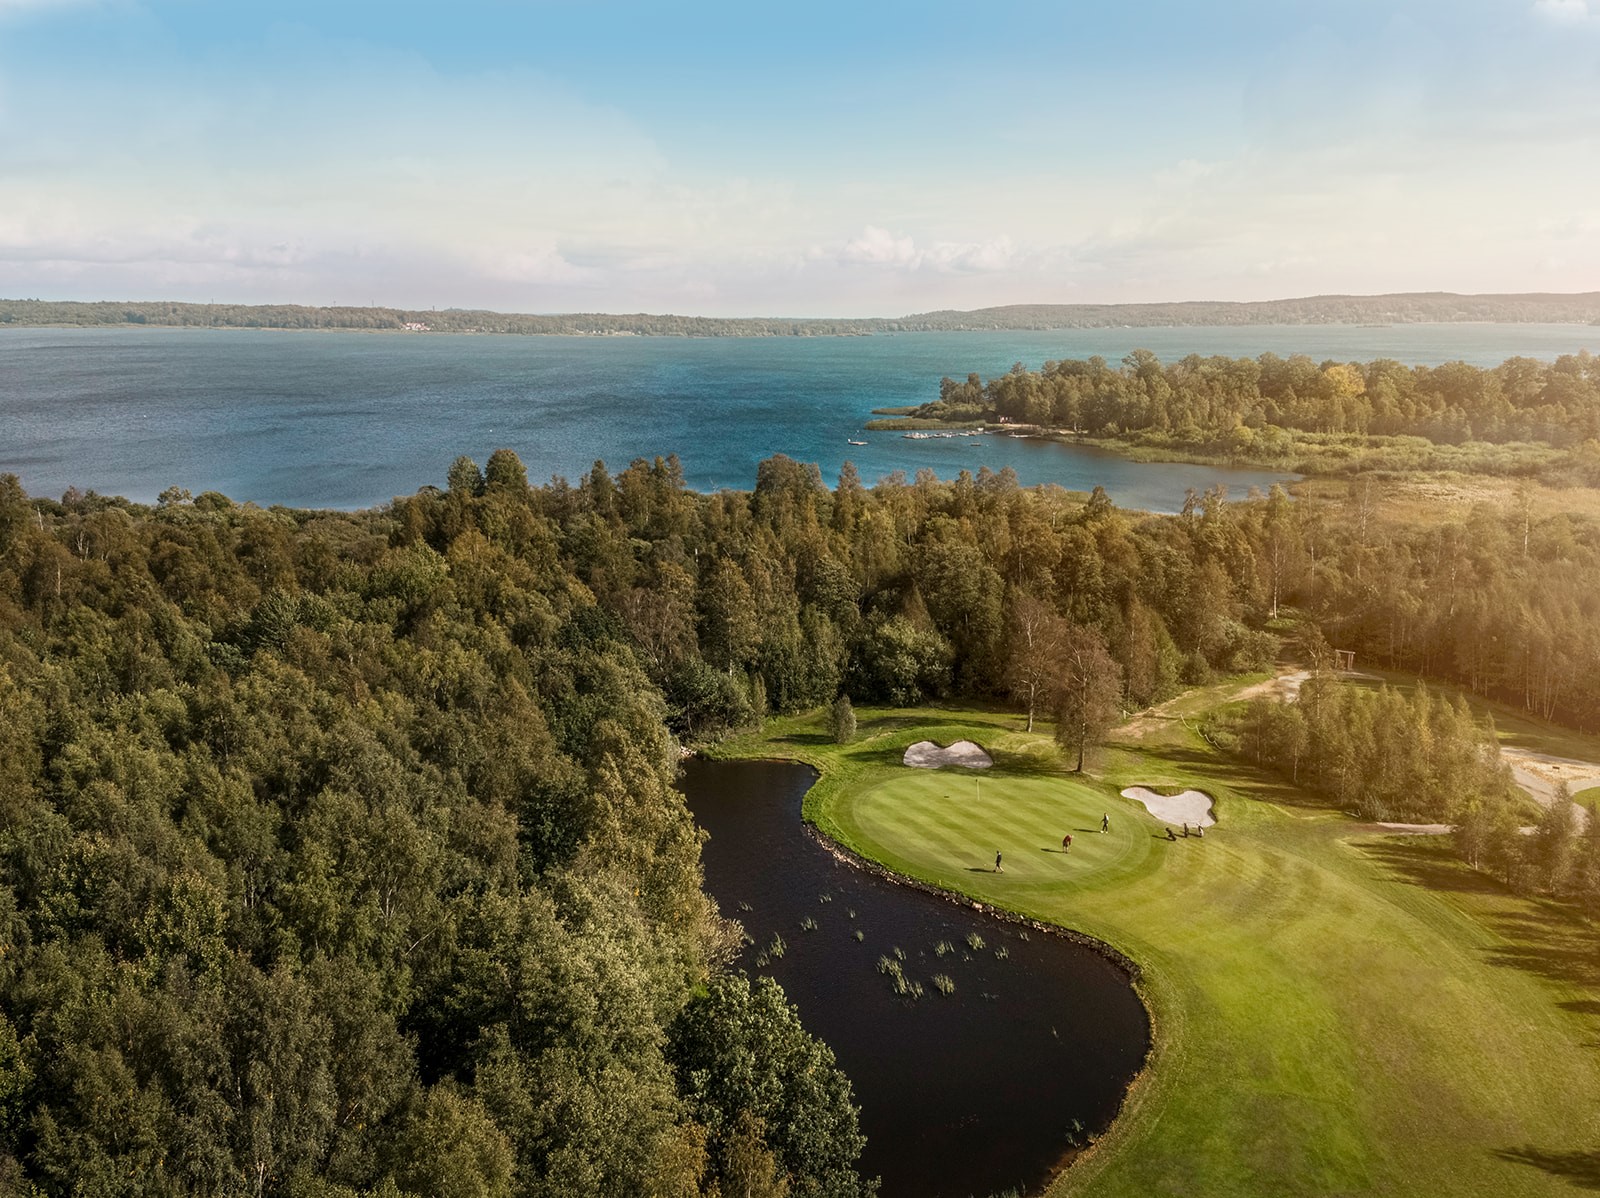 Skyrup Golf & Hotell | Golfresort i Skåne